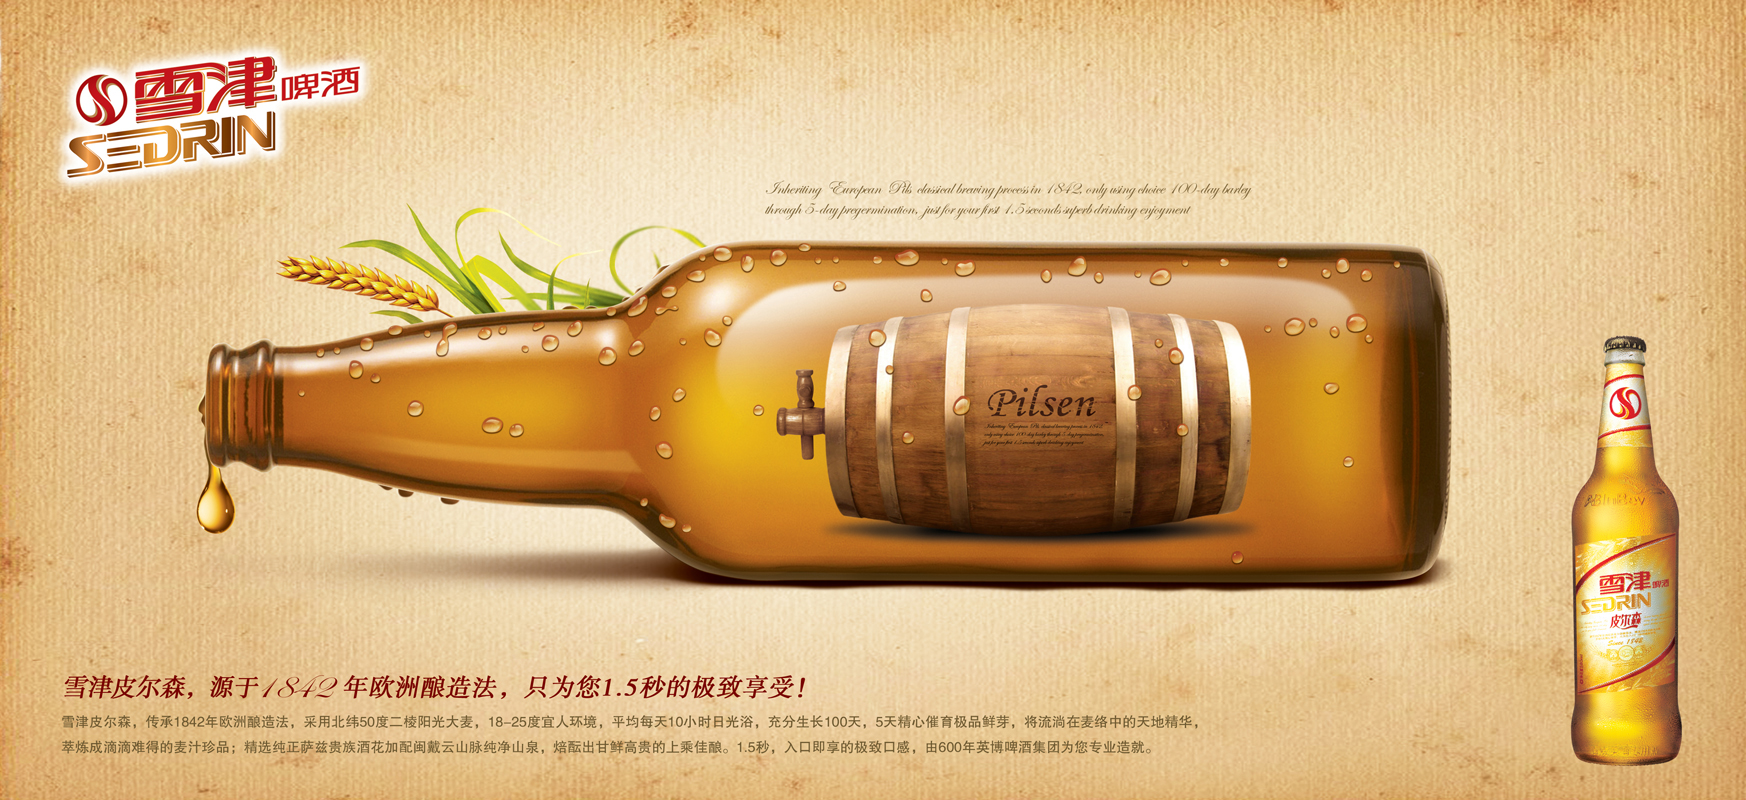 广告海报-雪津啤酒广告海报设计欣赏